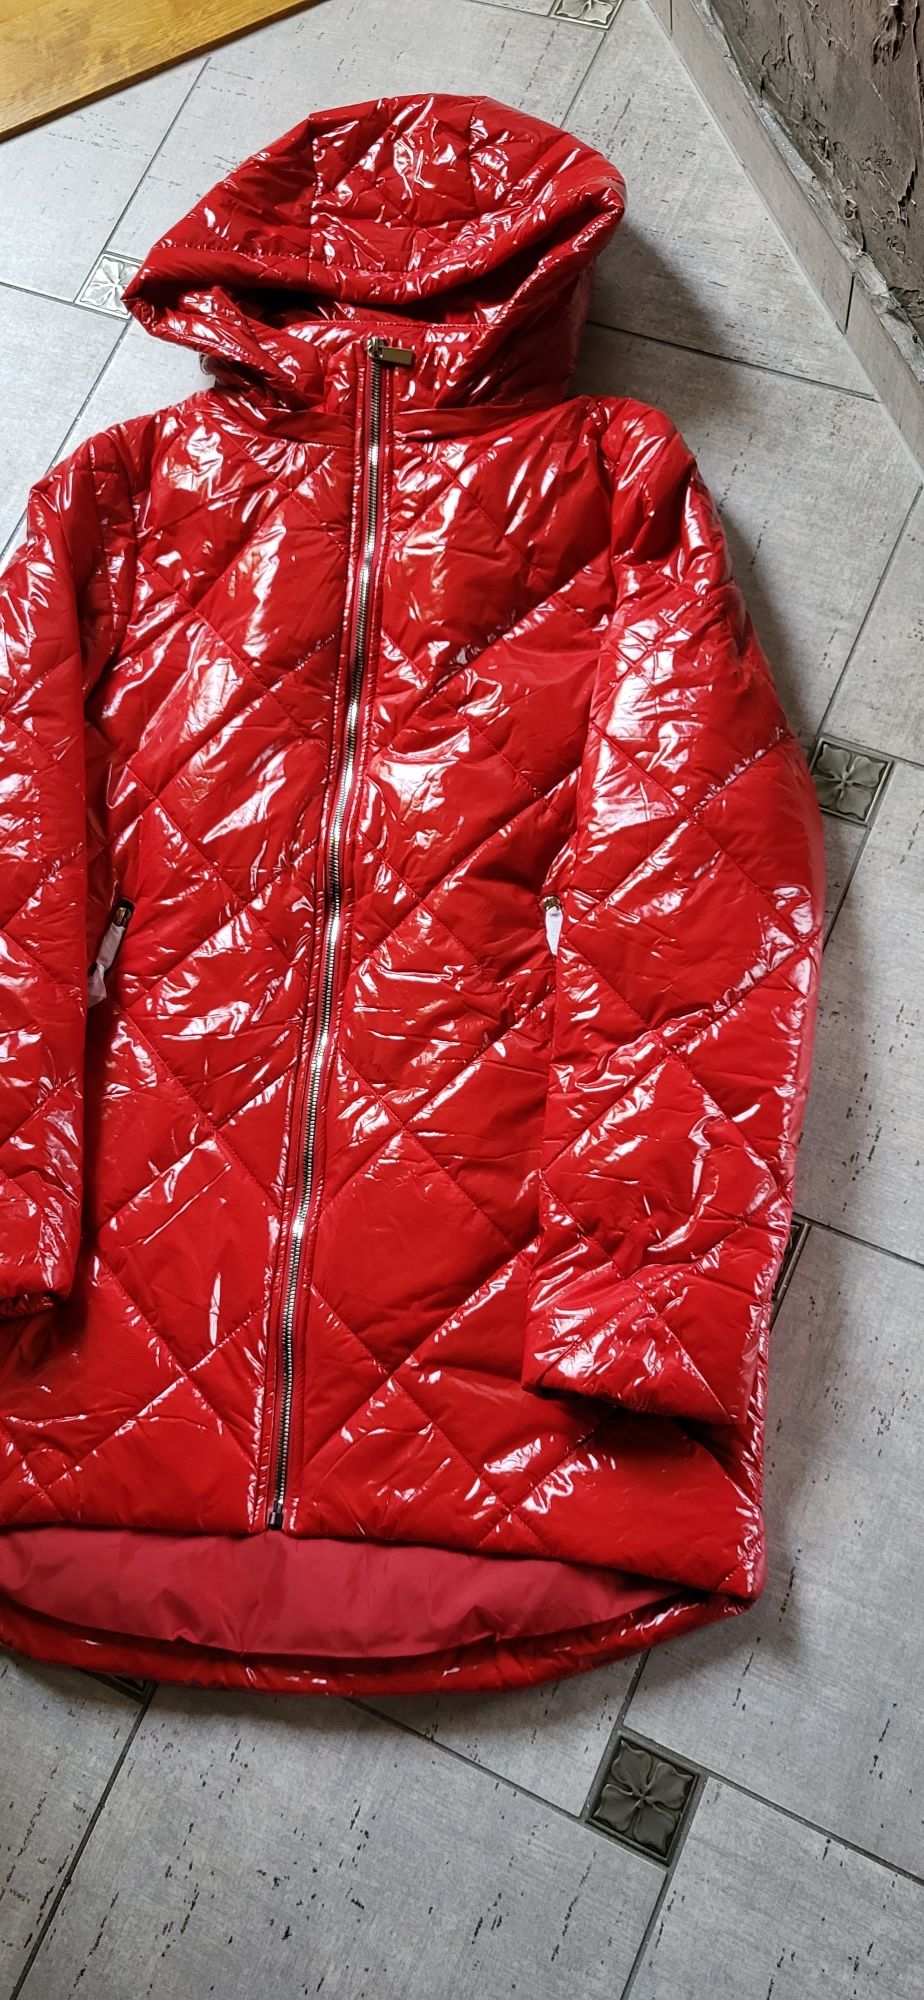 Kurtka damska czerwona lakierowana wiosenno jesienna lekka XL